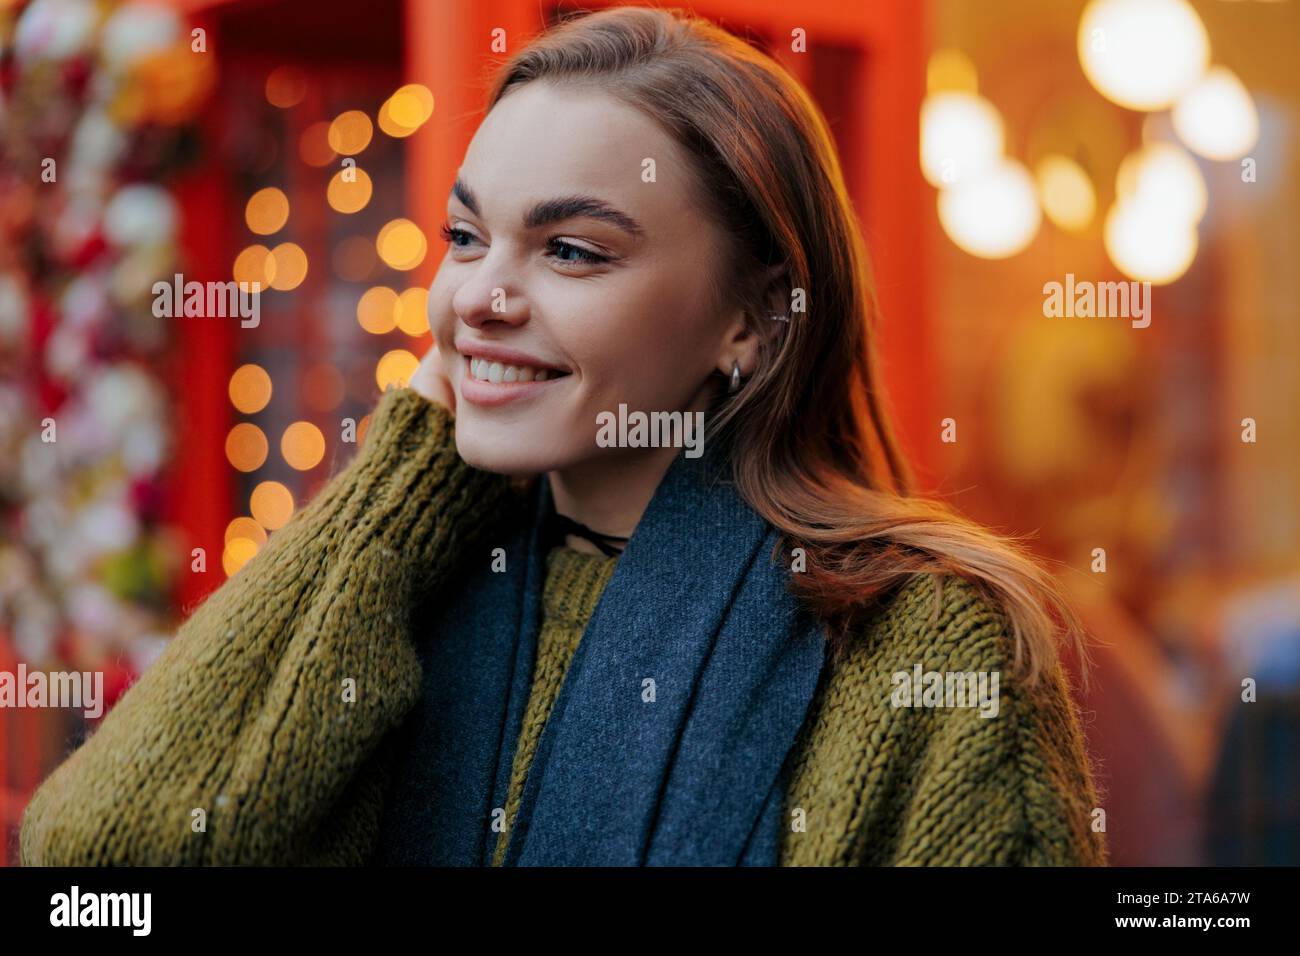 Ritratto di una giovane donna sorridente che si gode in vacanza di ghirlande luminose su una strada decorata della città. Vista ravvicinata. Foto Stock